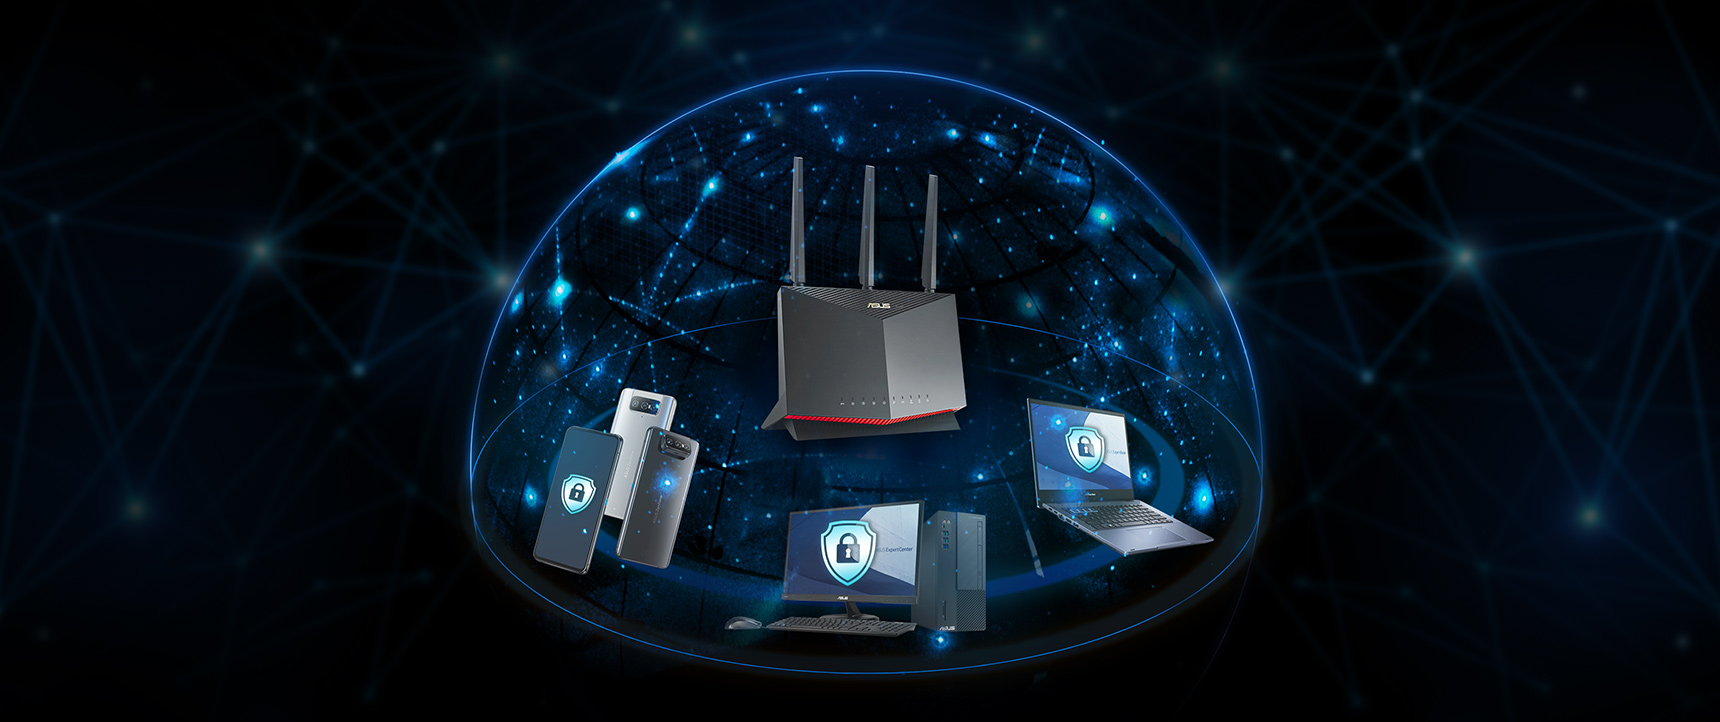 A legtöbb ASUS routerben megtalálható a Trend Micro™ rendszerére épülő AiProtection is, amely az üzleti hálózat összes eszközének védelmet nyújt